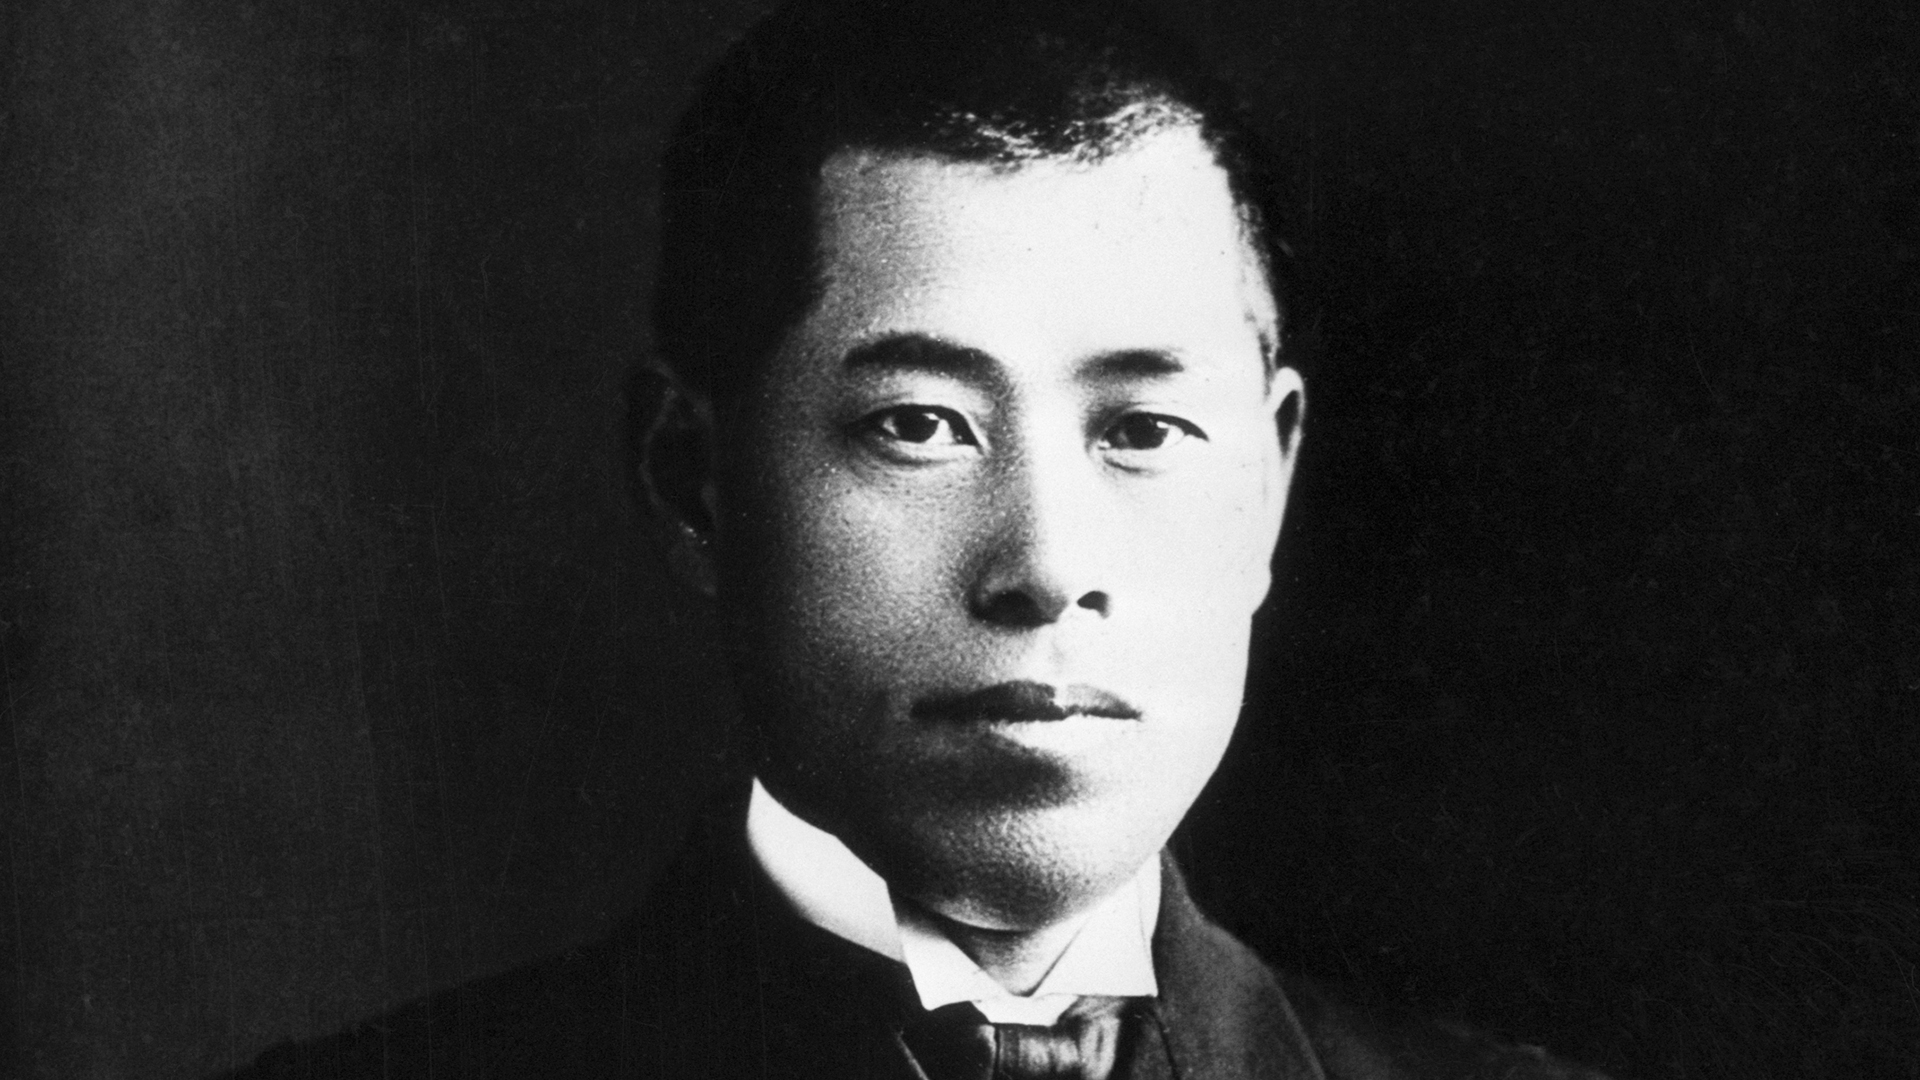 Isoroku Yamamoto, de joven, participó en la guerra contra Rusia y fue gravemente herido. Sobrevivió y se convirtió en el almirante de la Flota Imperial de Japón